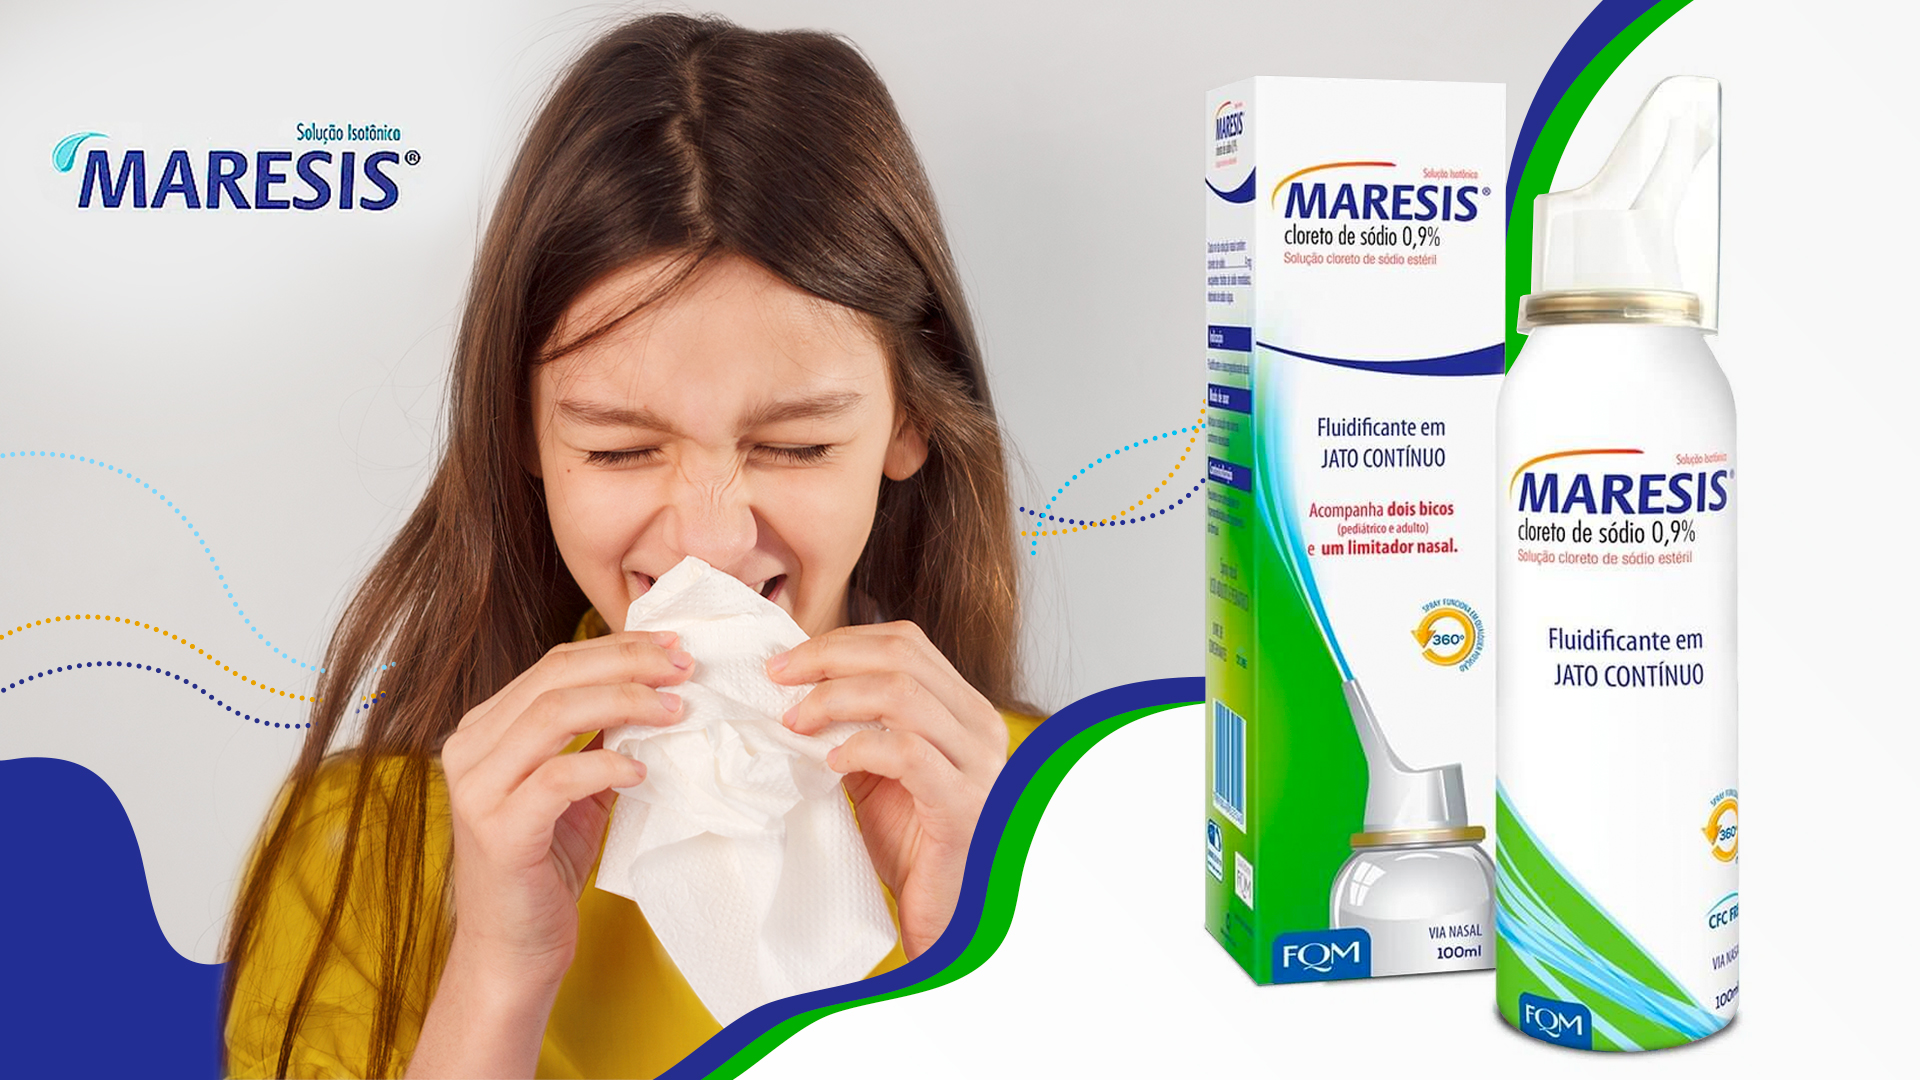 Foto de capa do artigo "Maresis: por que a limpeza nasal é importante?"